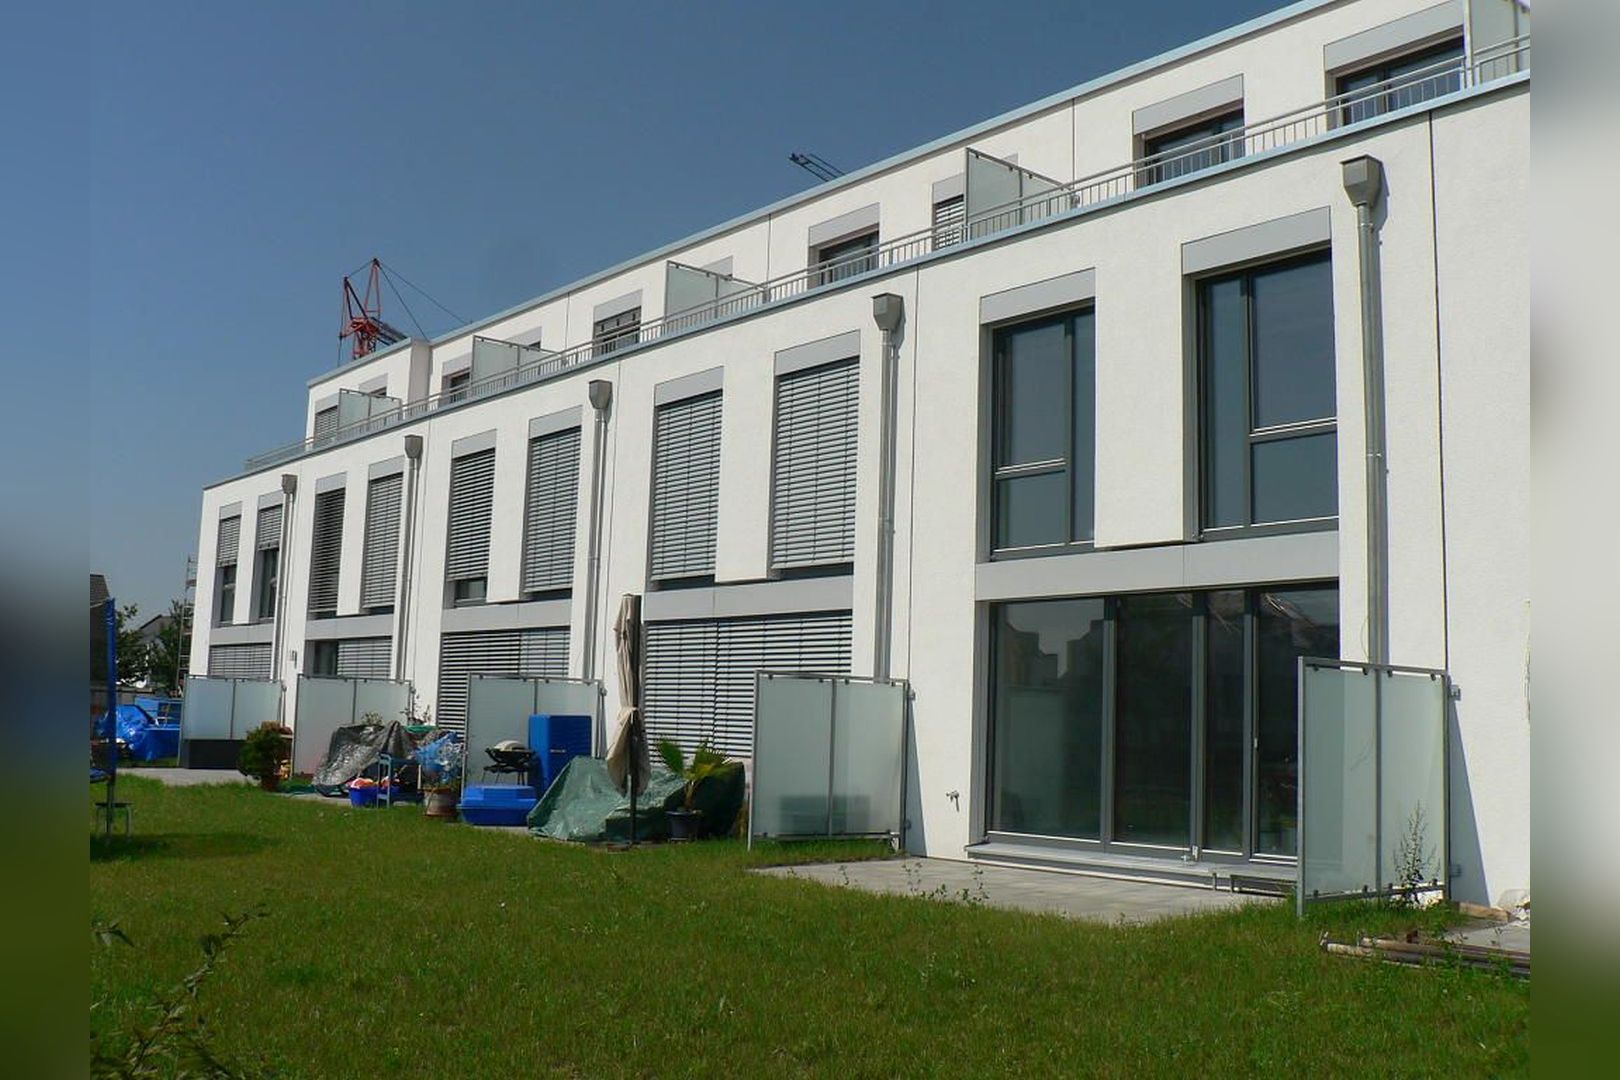 Immobilie Nr.Köln 009.2 - Reihenmittelhaus, 2,5-geschossig, vollunterkellert, mit Garten,Terrasse und zusätzl. Dachterrasse - Bild 2.jpg